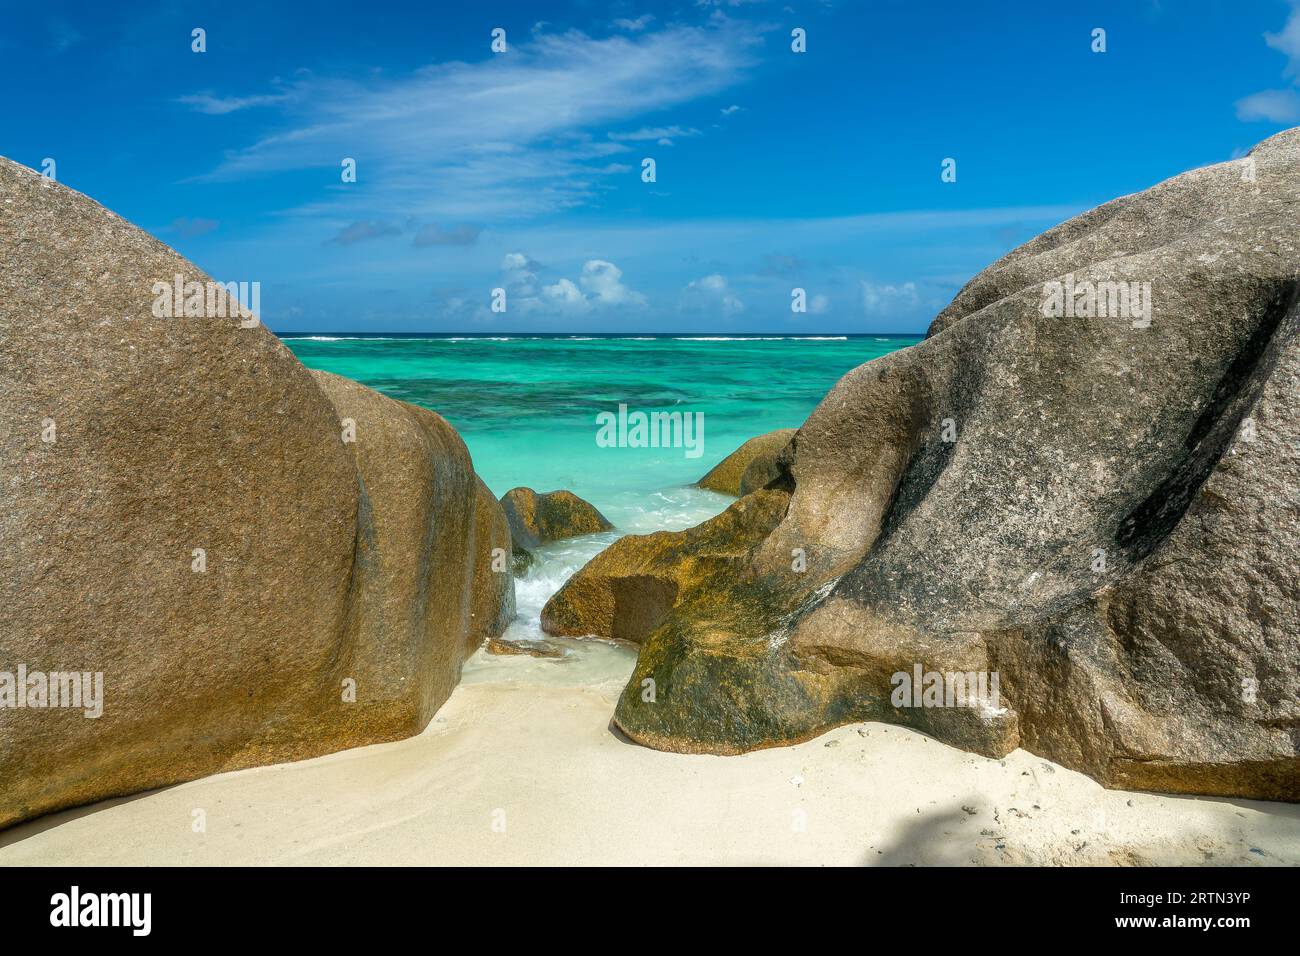 Roches granitiques sur la pittoresque plage de sable tropical Anse Source d'argent, île de la Digue, Seychelles Banque D'Images